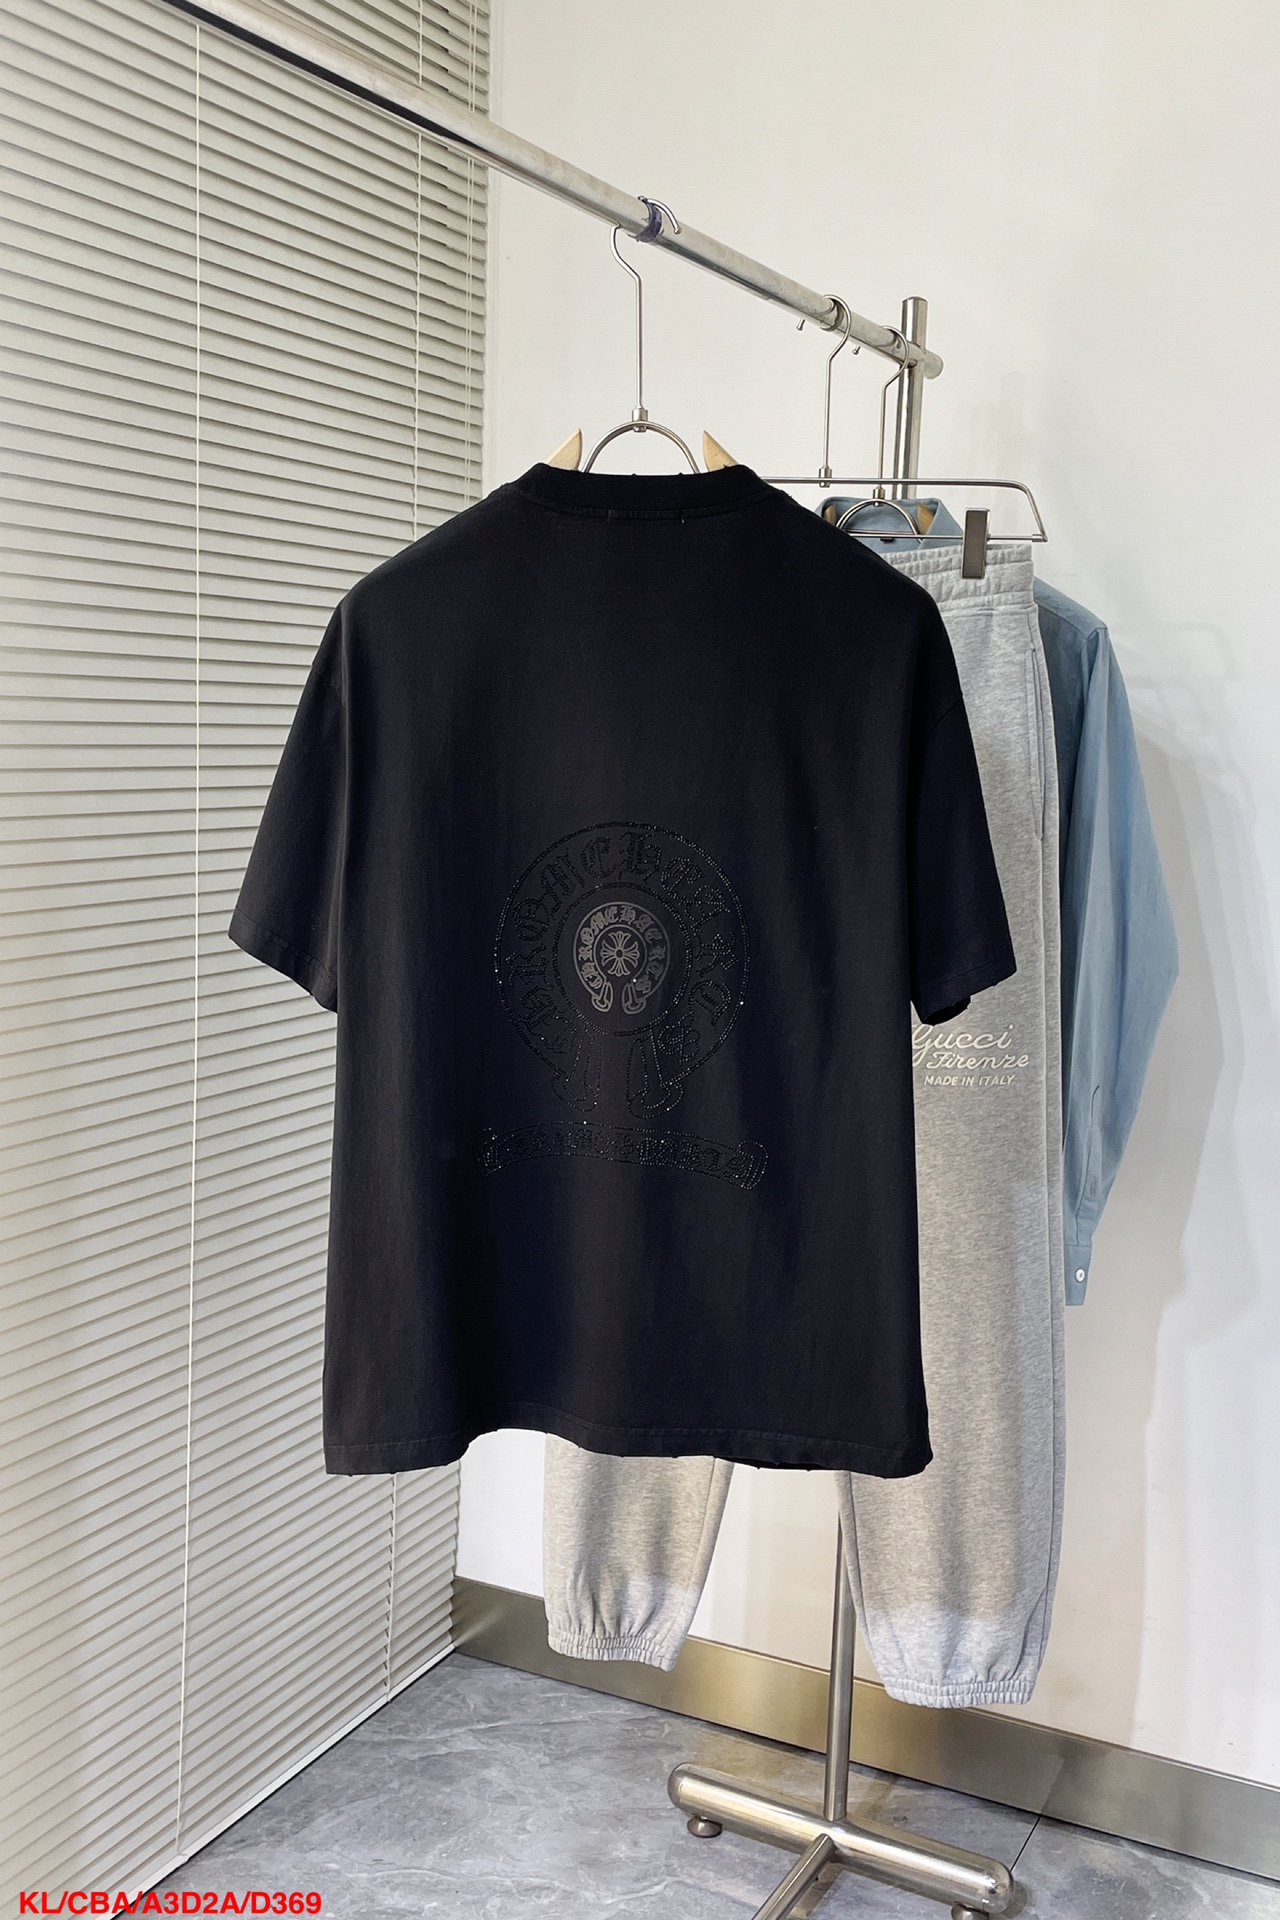 限定販売 クロムハーツtシャツ サイズ感スーパーコピー トップス 純綿 24新品 高級感 シンプル ブラック_3